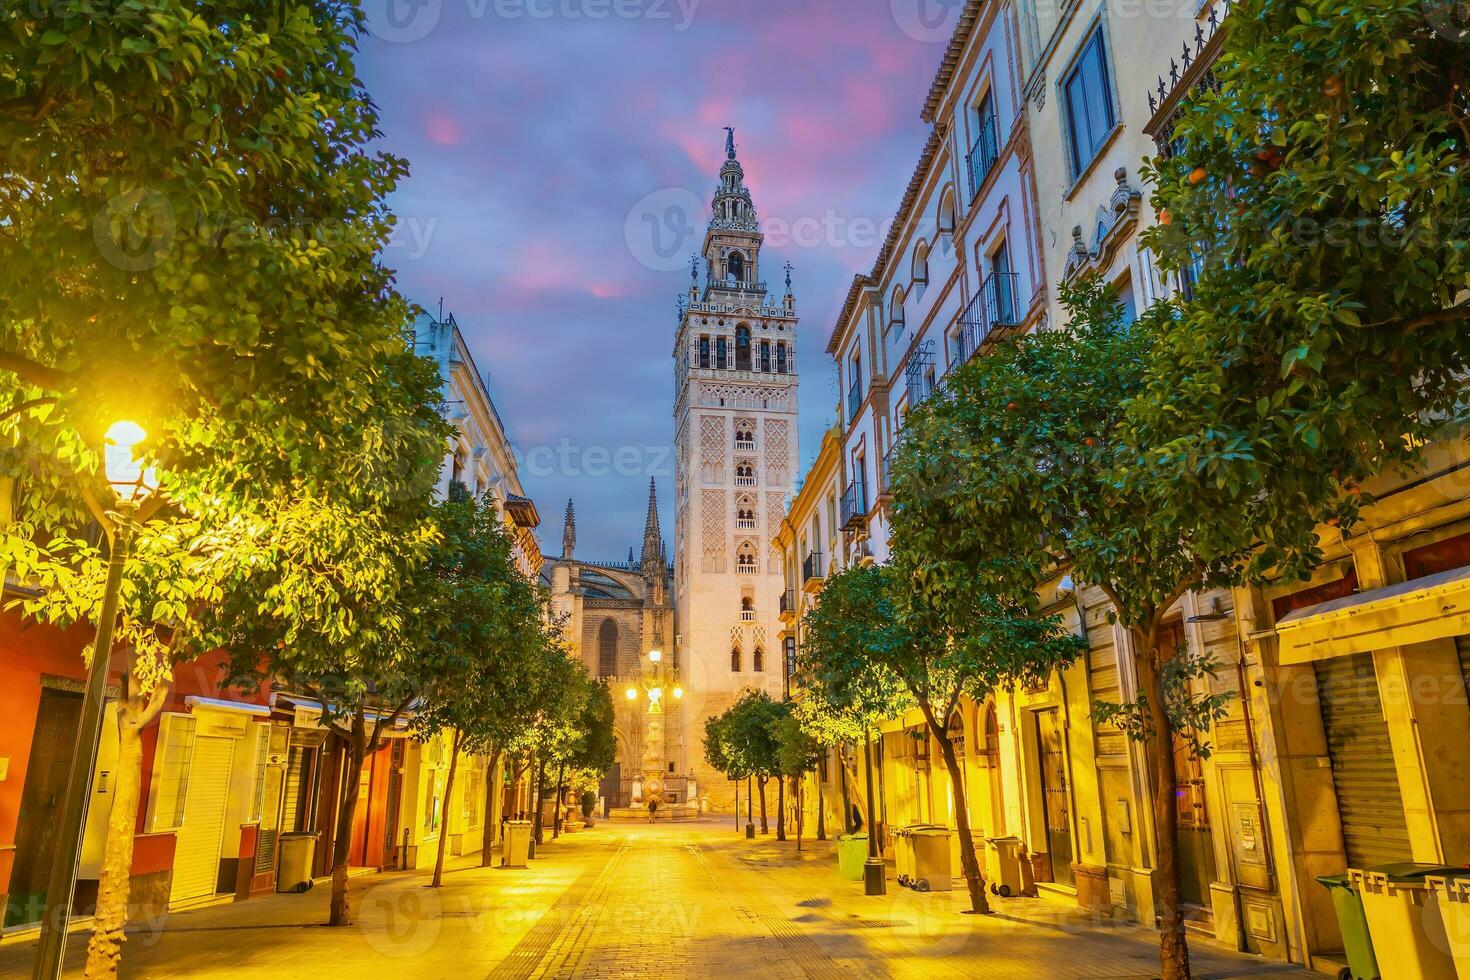 giralda toren en Sevilla kathedraal in oude stad Spanje foto